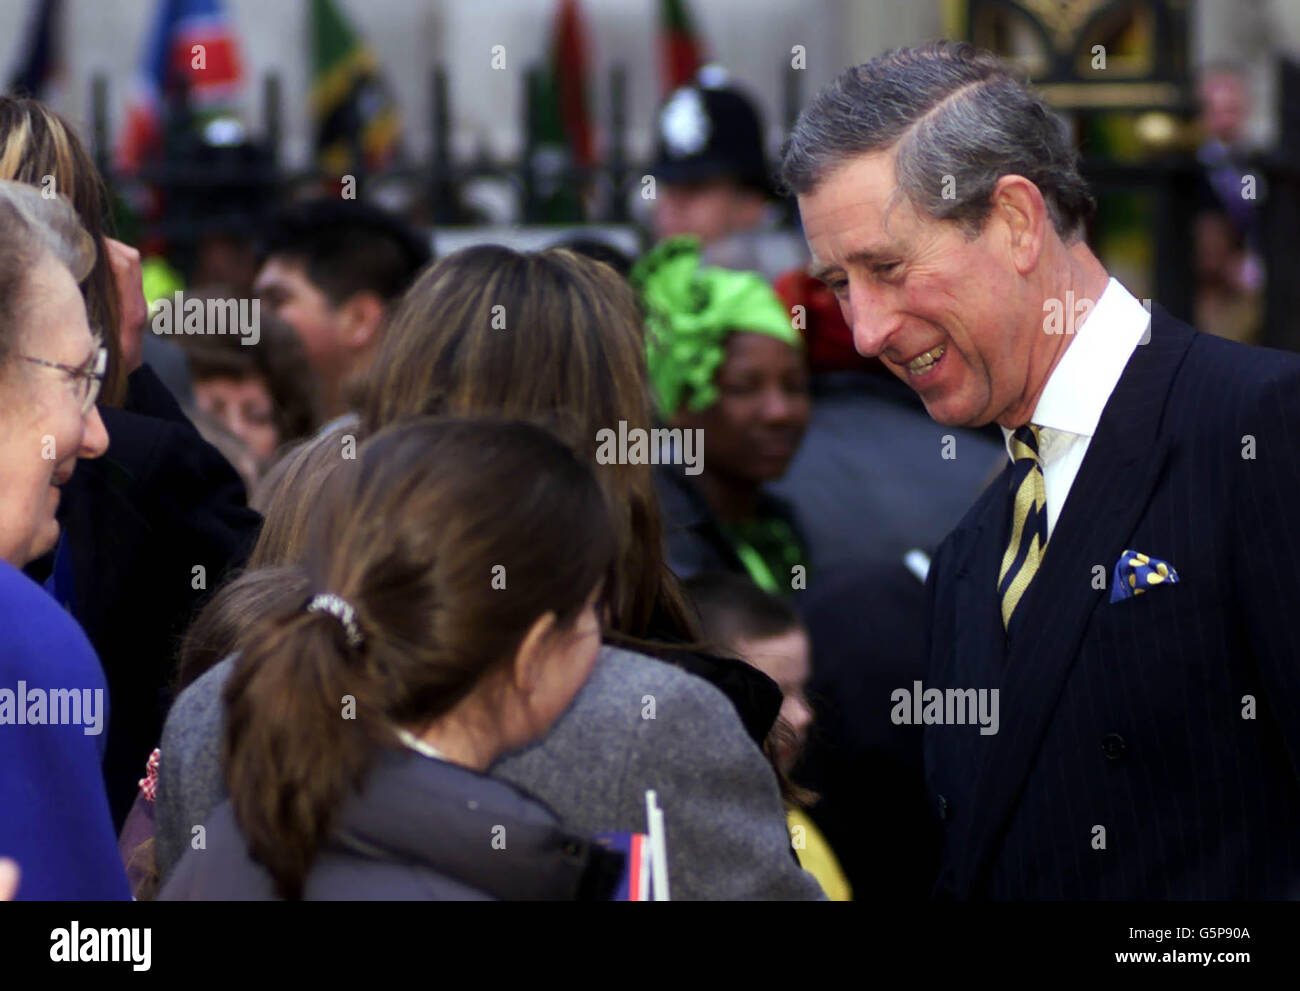 Le prince de Galles de Grande-Bretagne rencontre le public après avoir assisté à la Commonwealth Day observance Society à l'abbaye de Westminster, dans le centre de londres. Banque D'Images